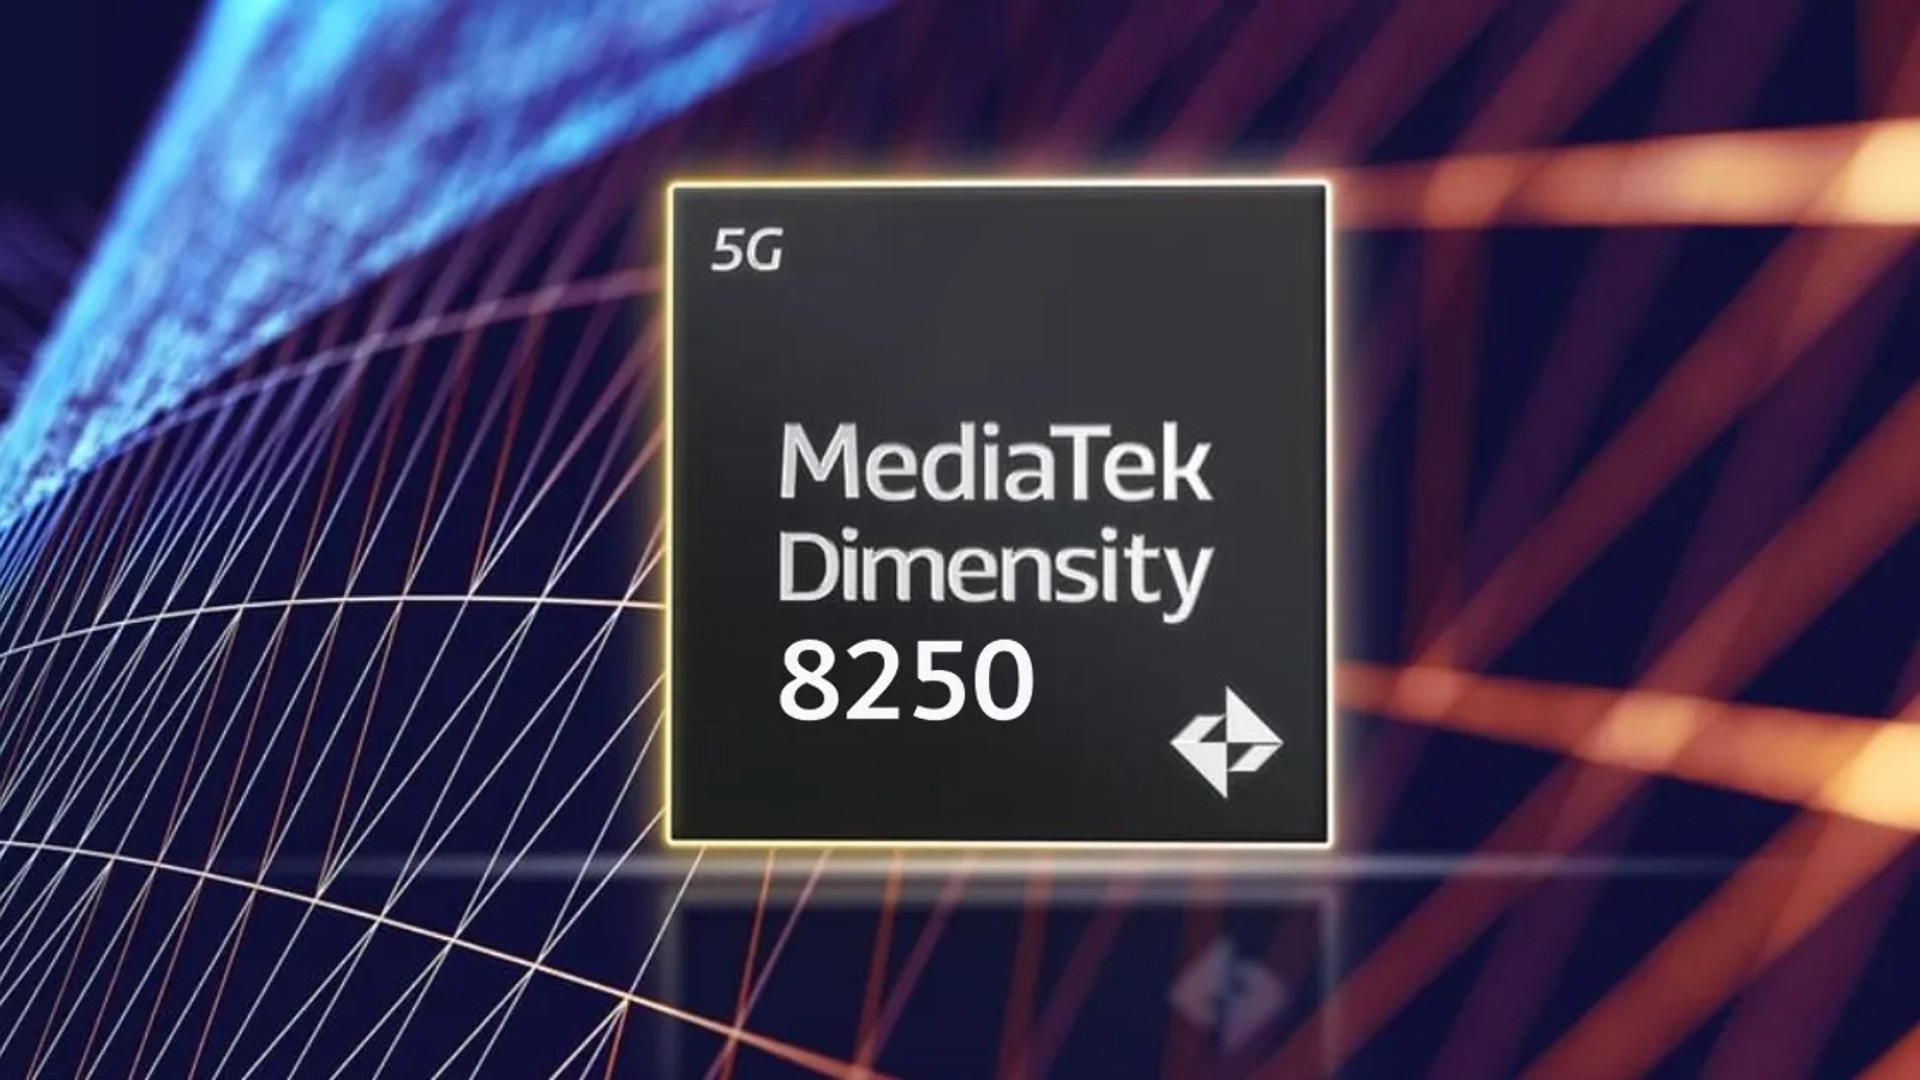 procesor MediaTek Dimensity 8250